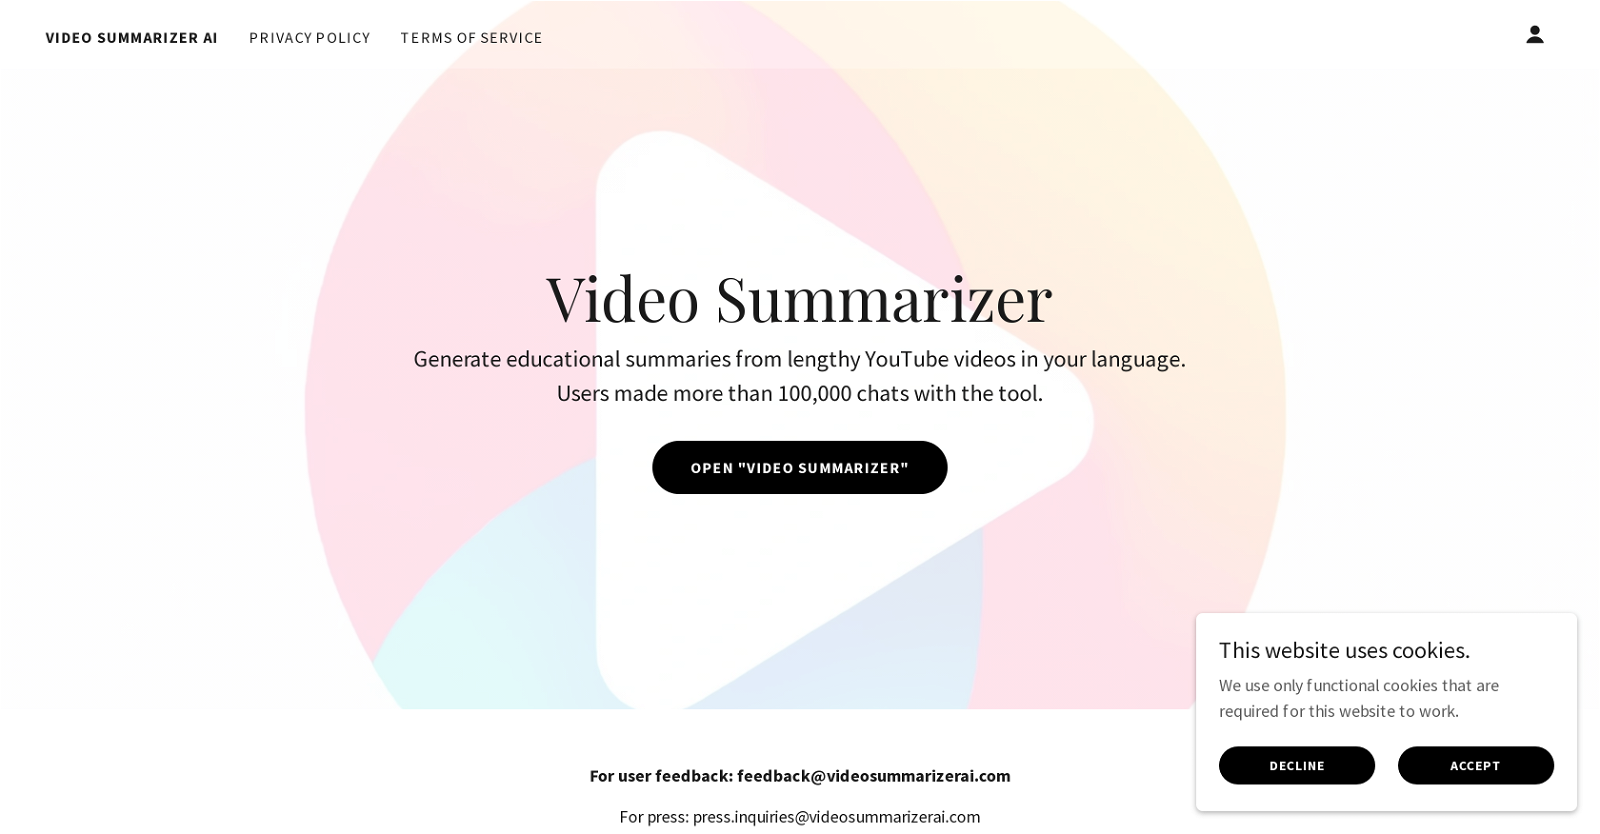 Video Summarizer AI website